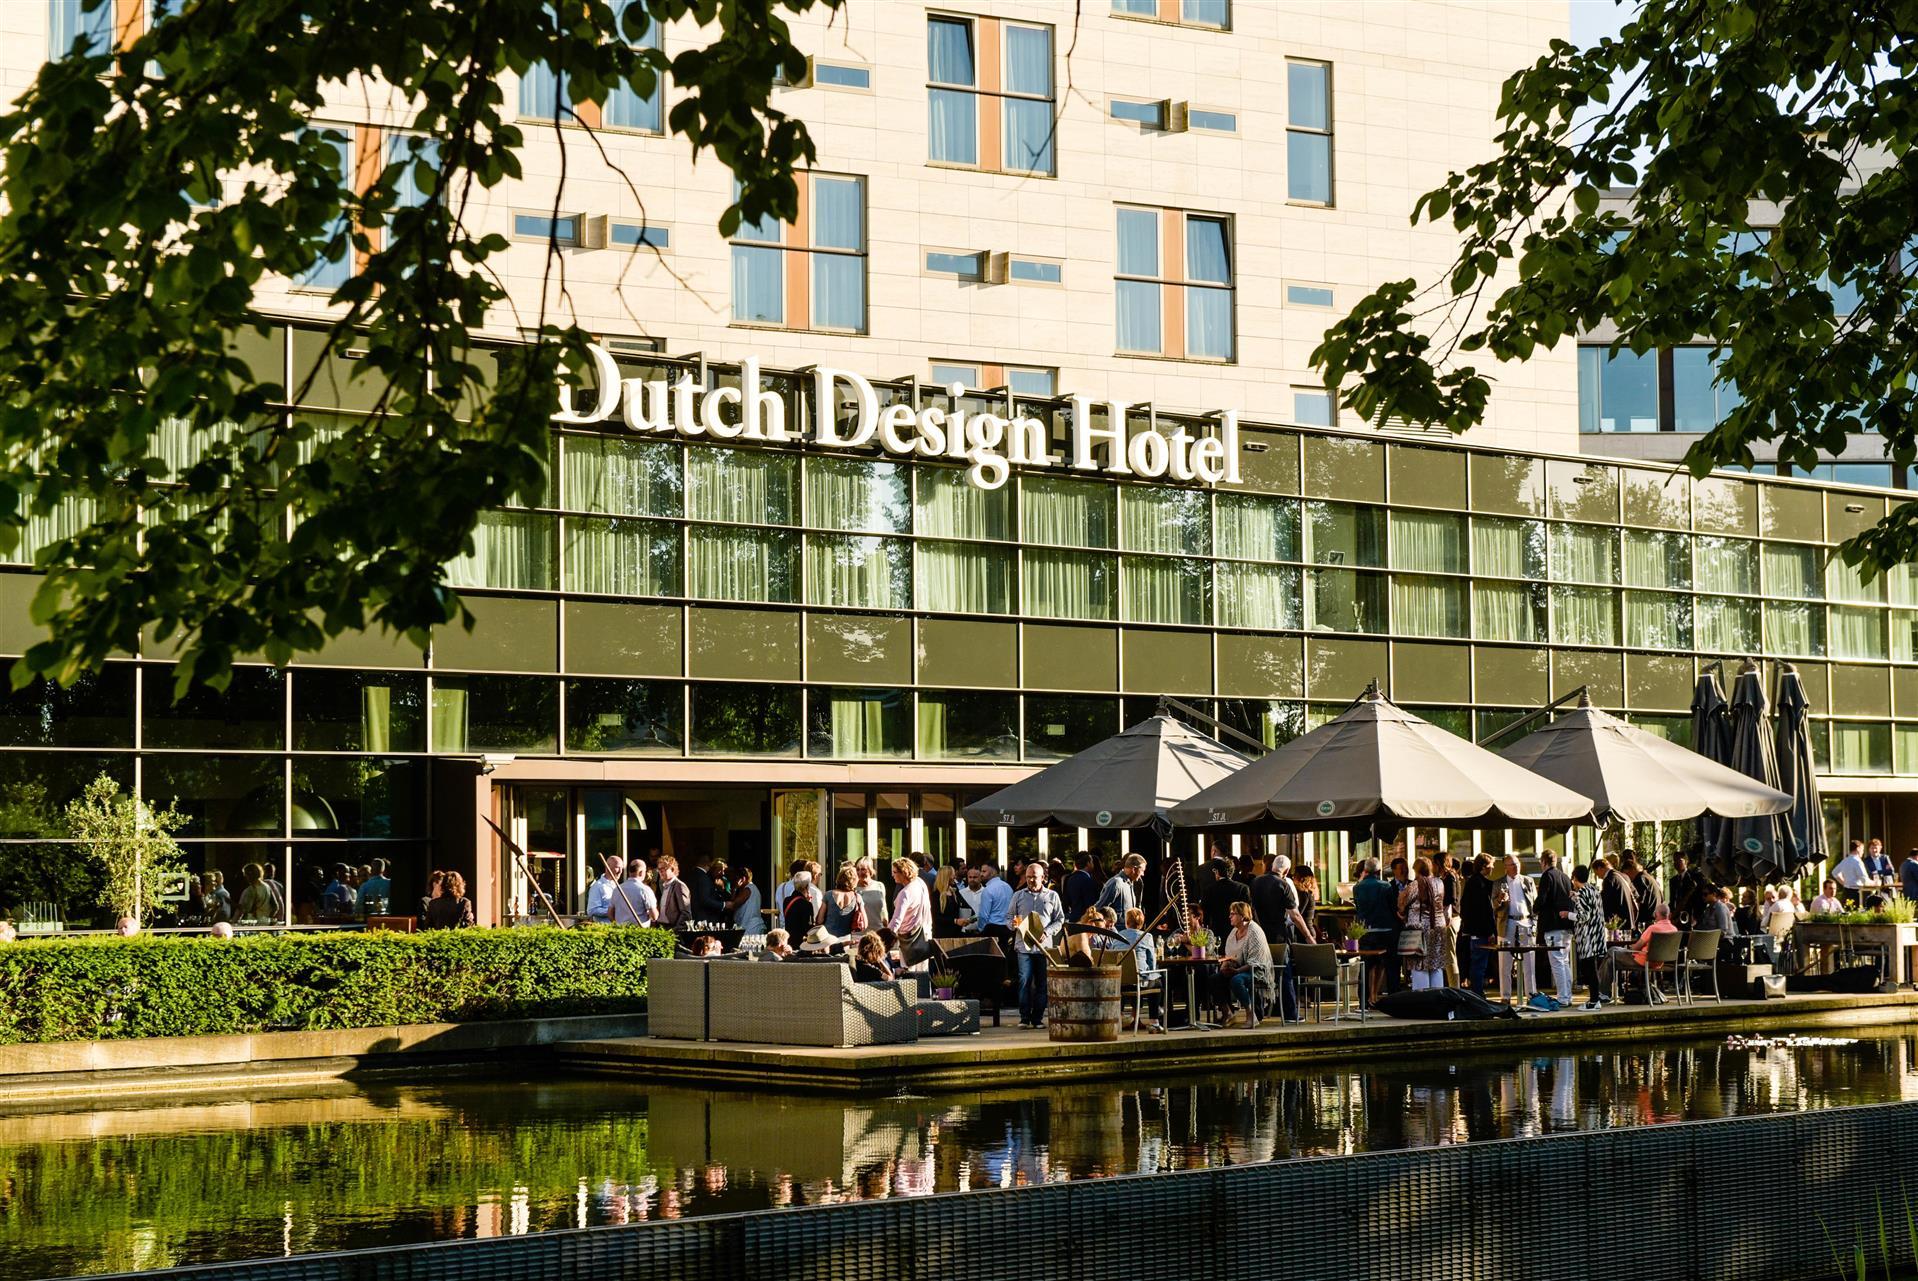 Dutch Design Hotel Artemis in Amsterdam, NL